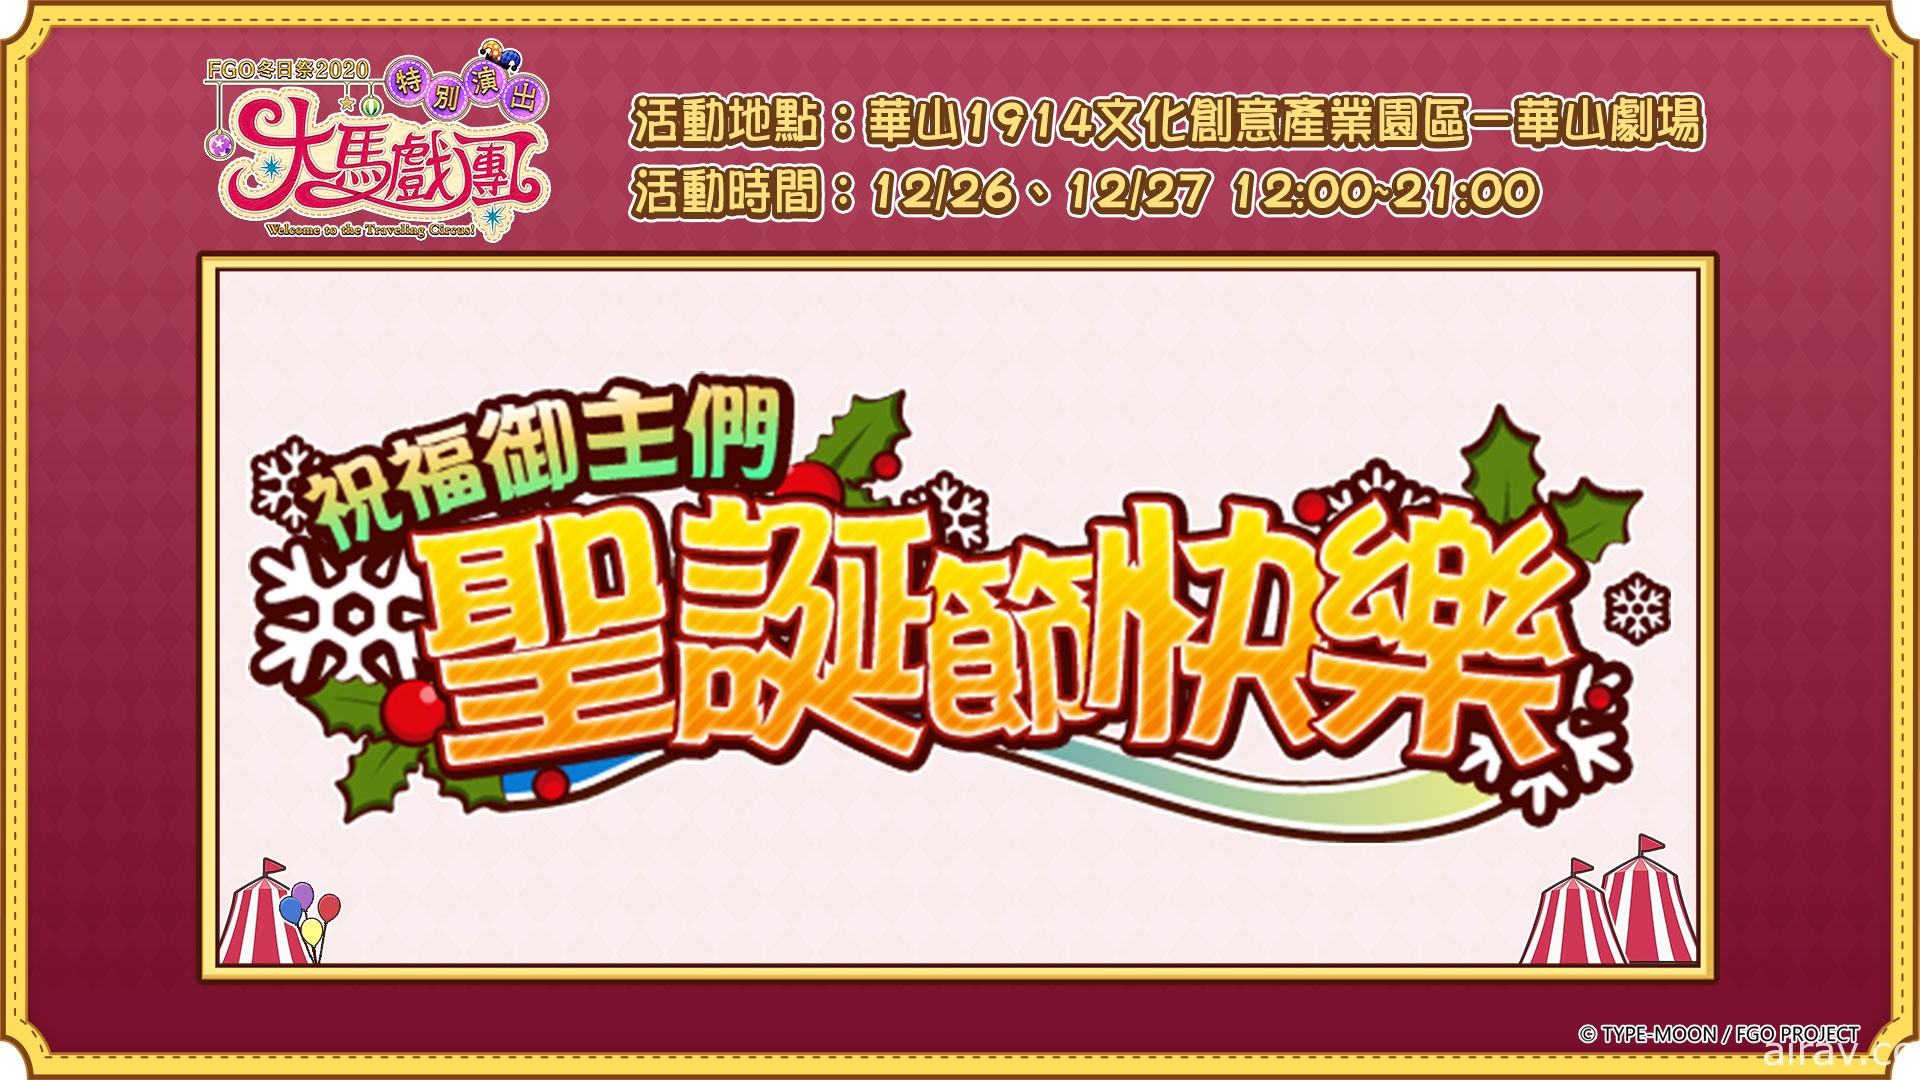 《Fate/Grand Order》繁中版“冬日祭 2020 大马戏团”线下活动明日开幕